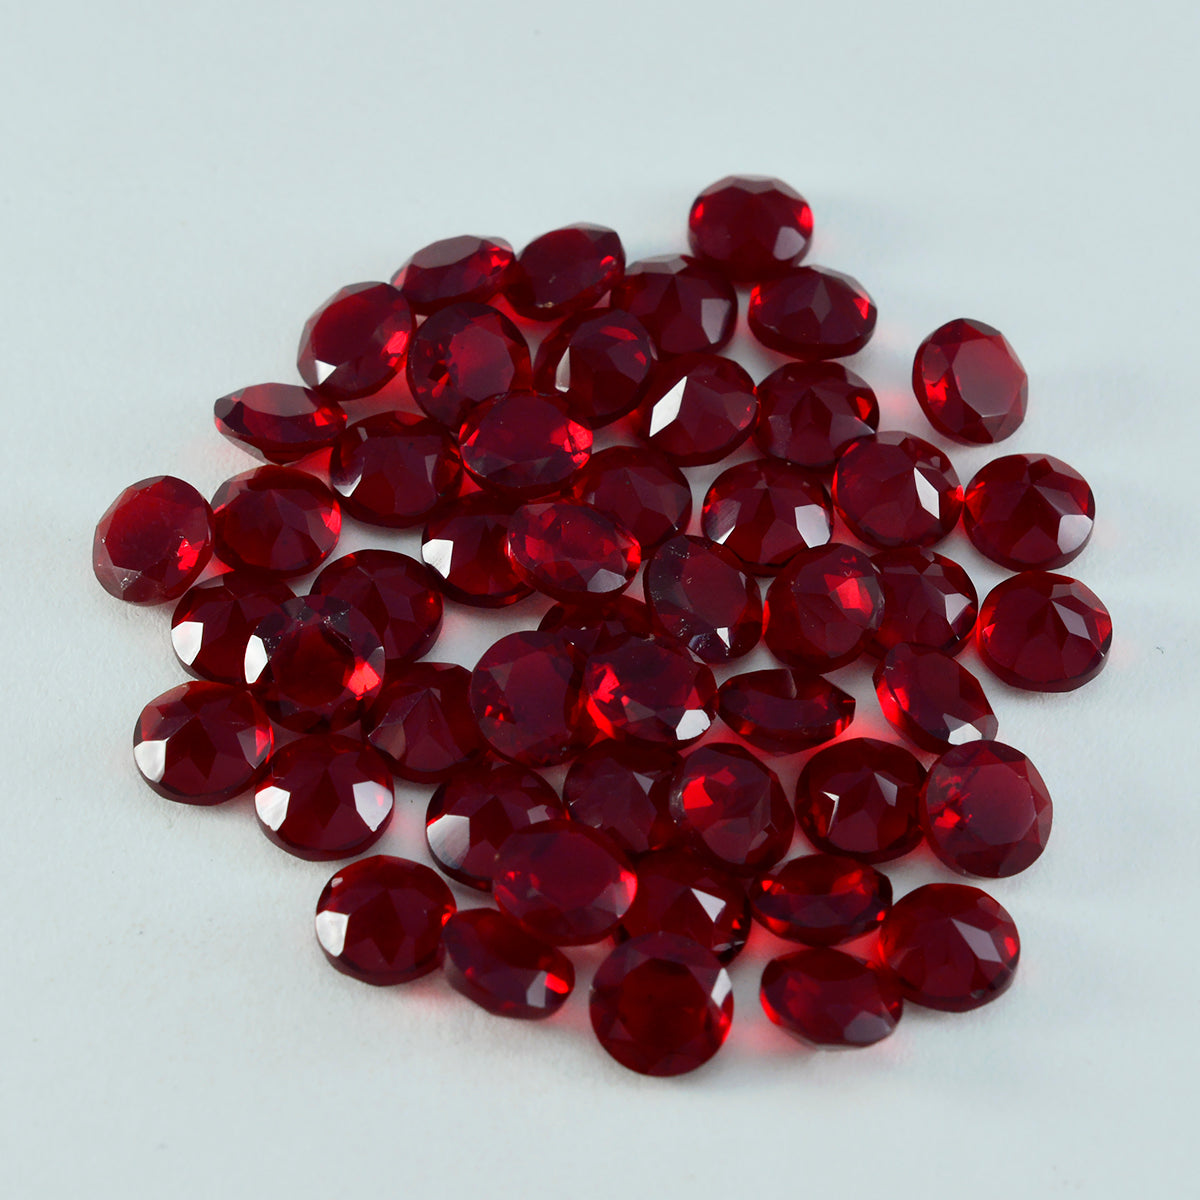 riyogems 1 pieza de rubí rojo cz facetado 5x5 mm forma redonda piedra preciosa de calidad a1